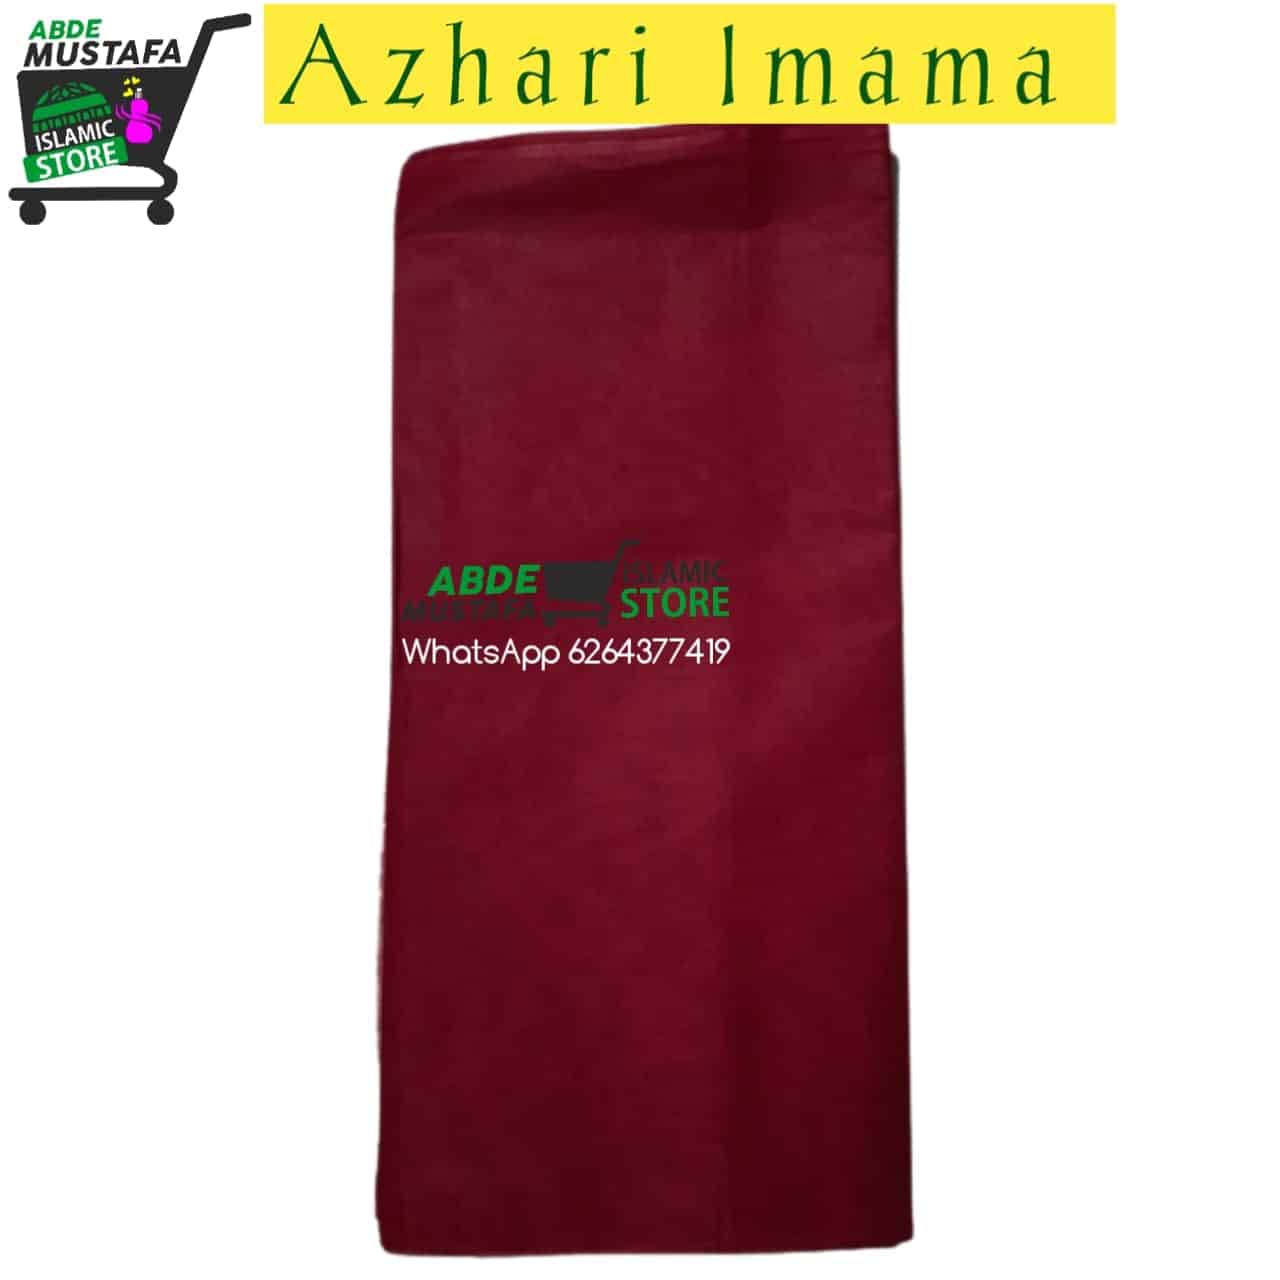 Azhari Imama Sharif Maroon Colour By Abde Mustafa Store (Colour Code #24)